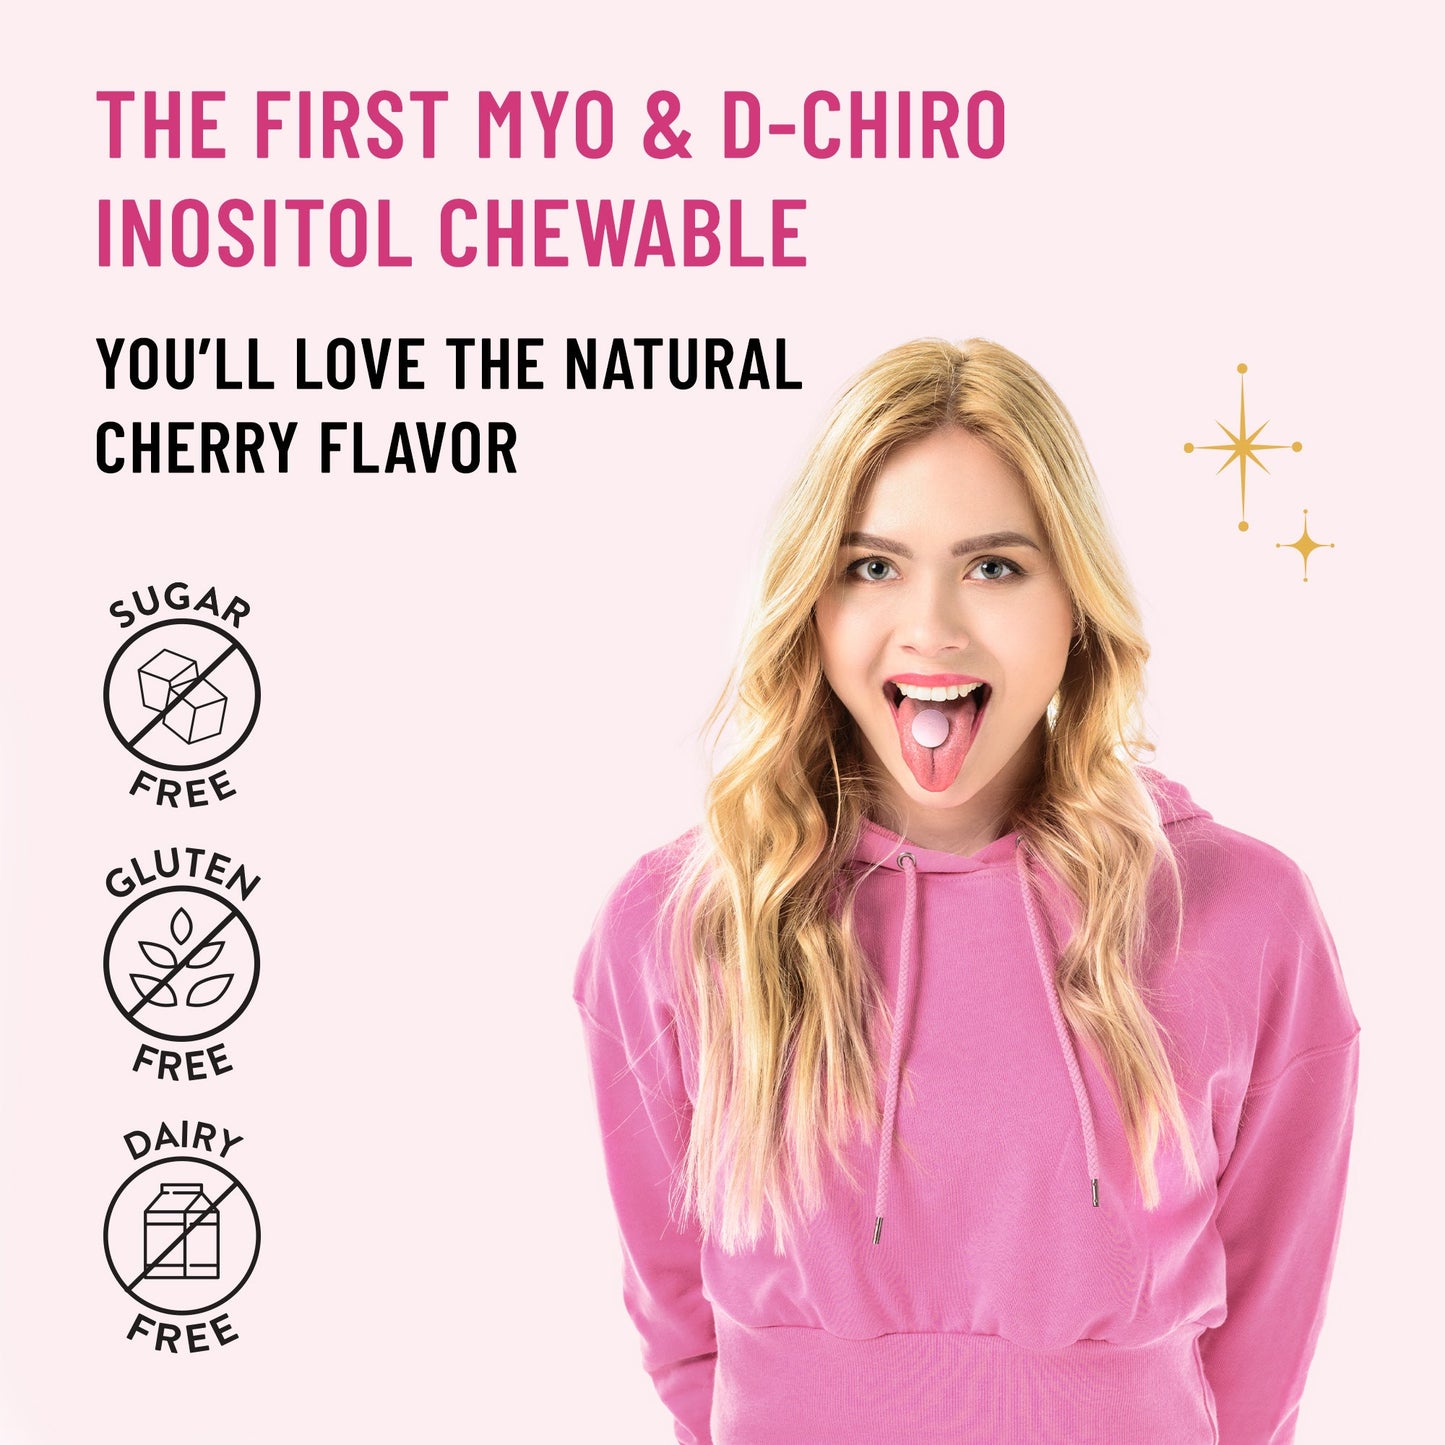 Myo & D-Chiro Inositol Chewable Tablets - Legendairy Milk